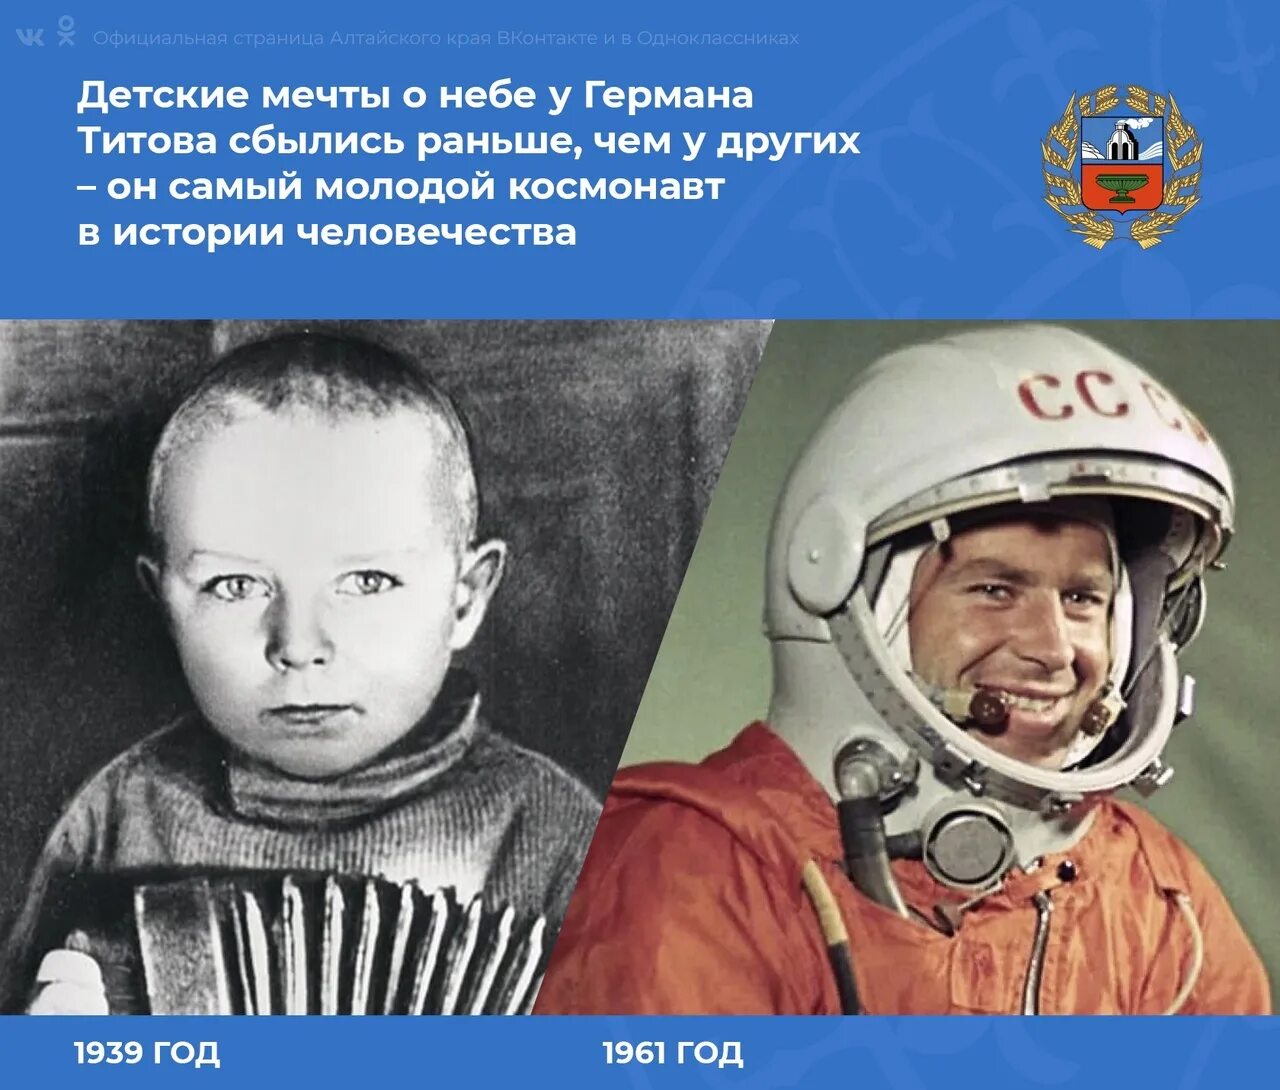 Полет в космос Германа Титова 1961 г. Второй космонавт после гагарина полетел в космос